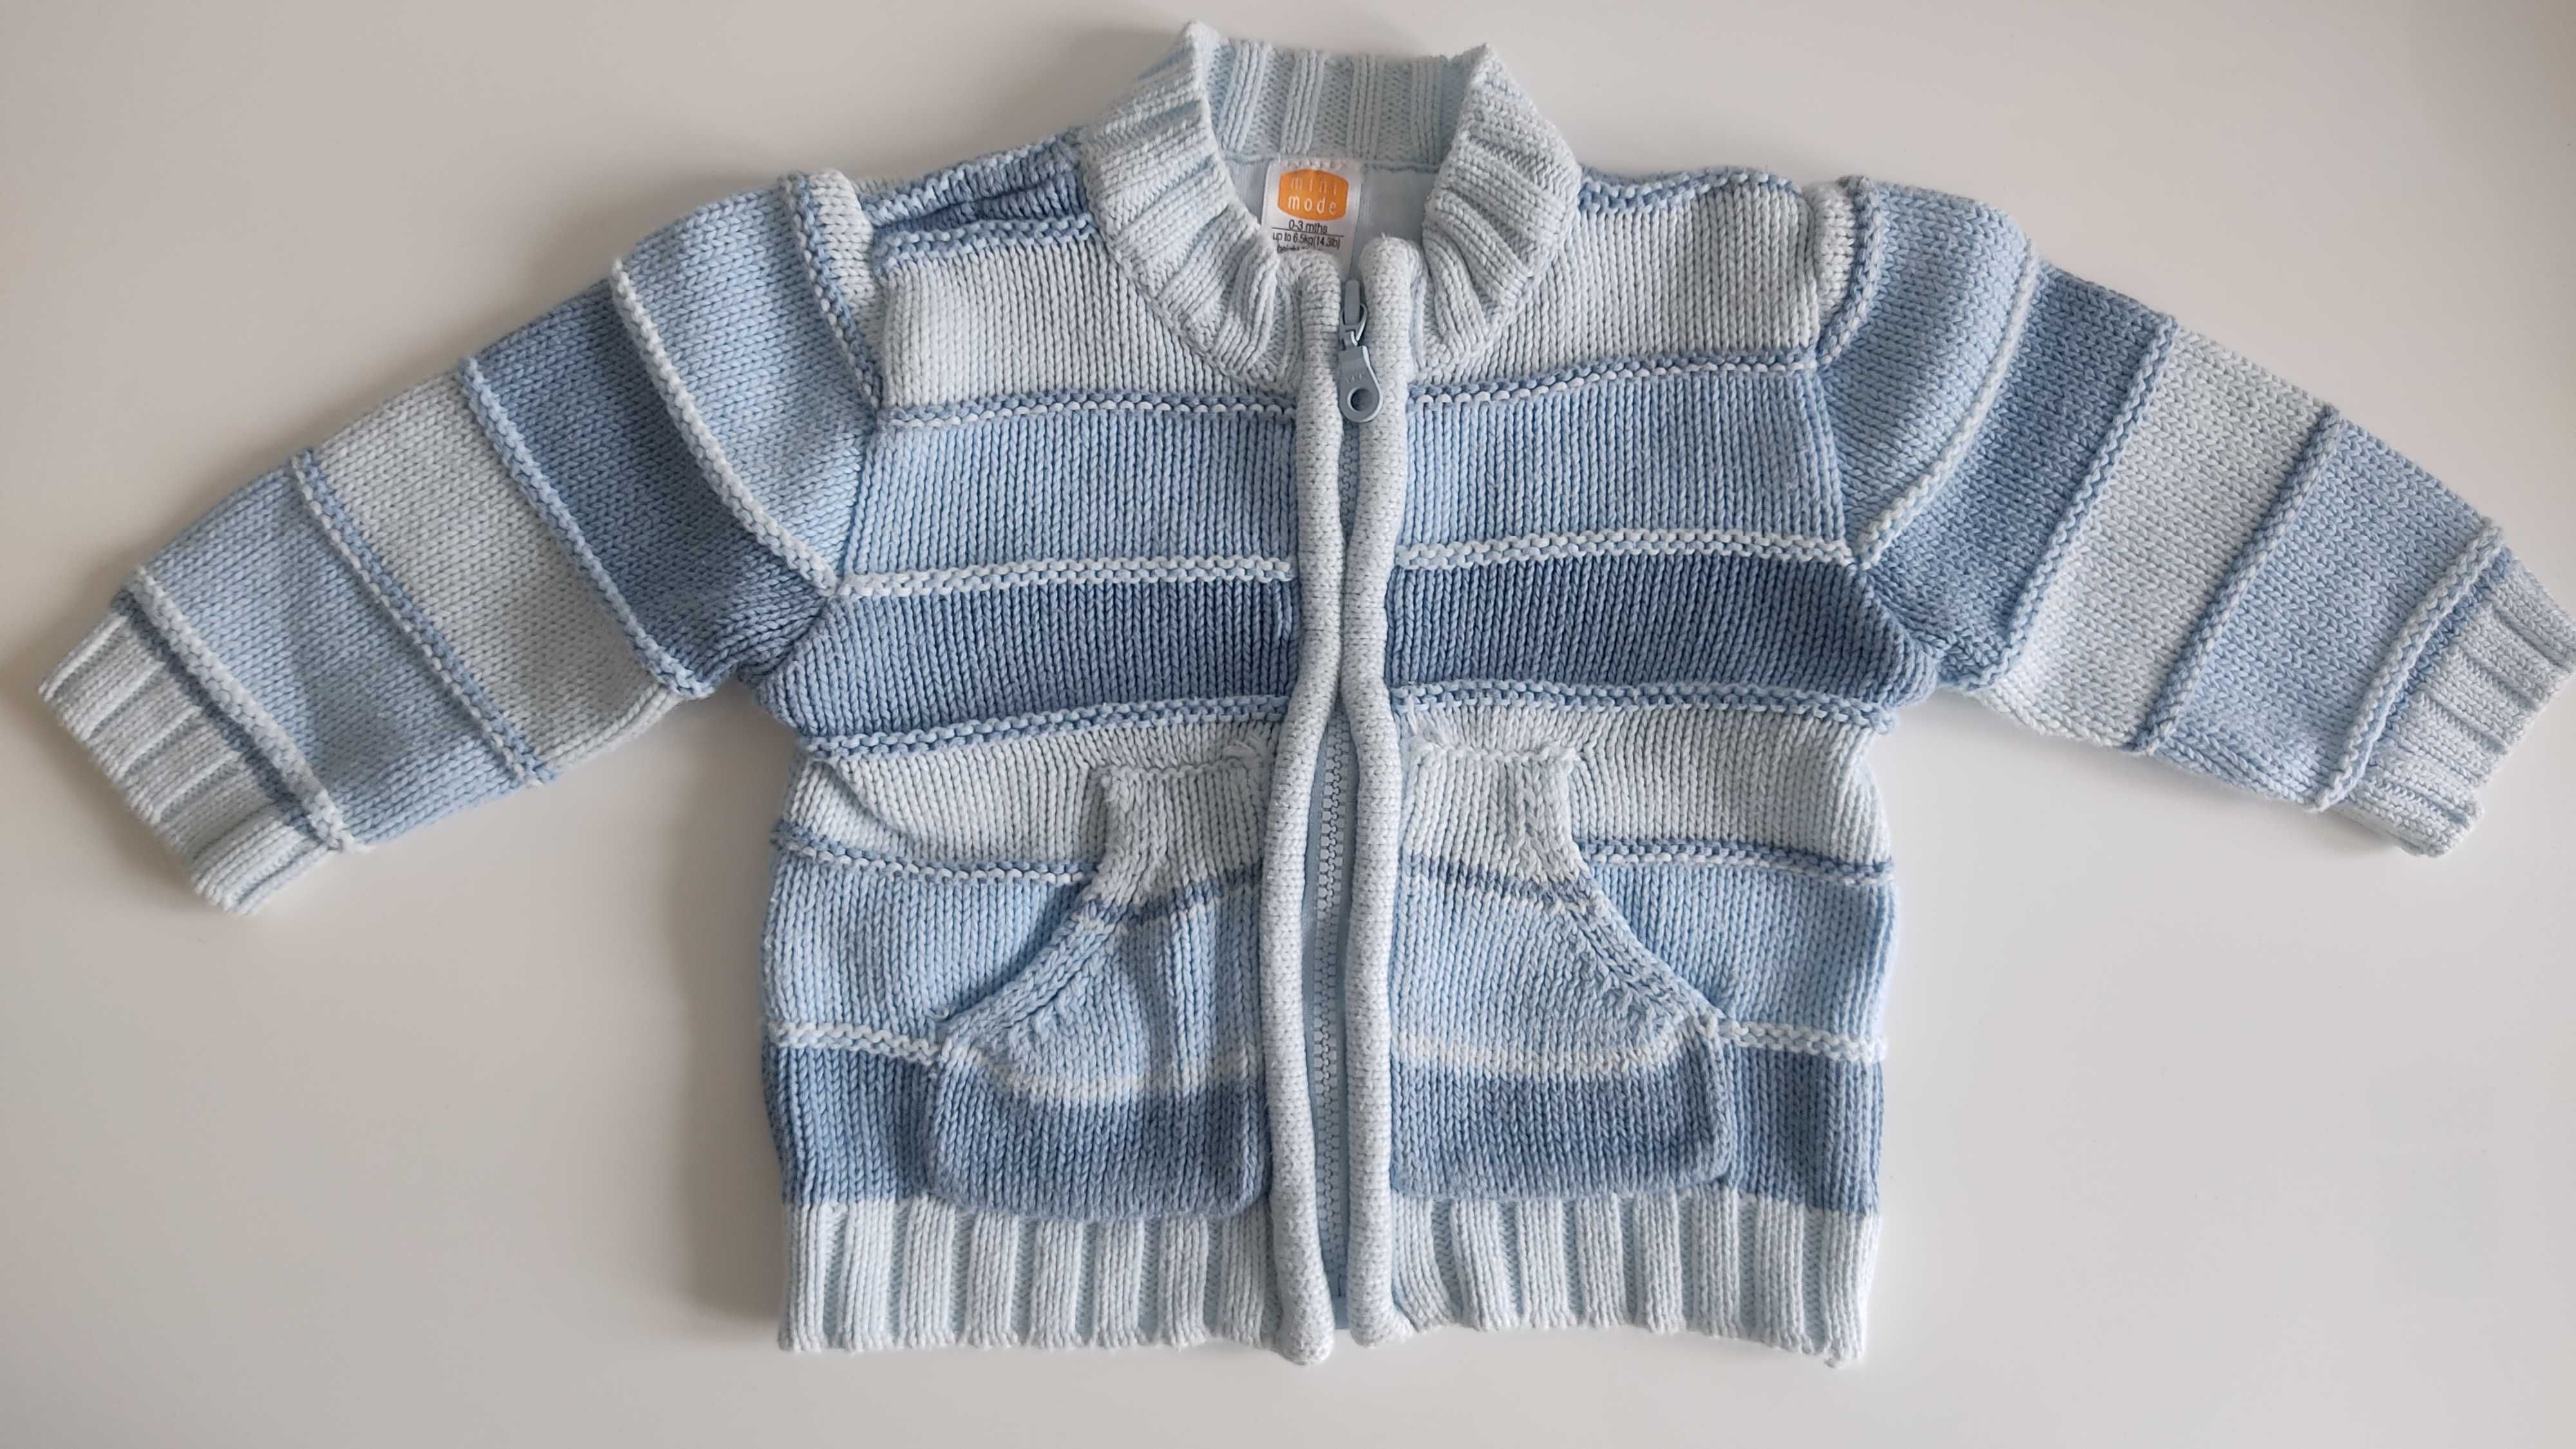 Błękitny sweterek niemowlęcy rozm. 56-62